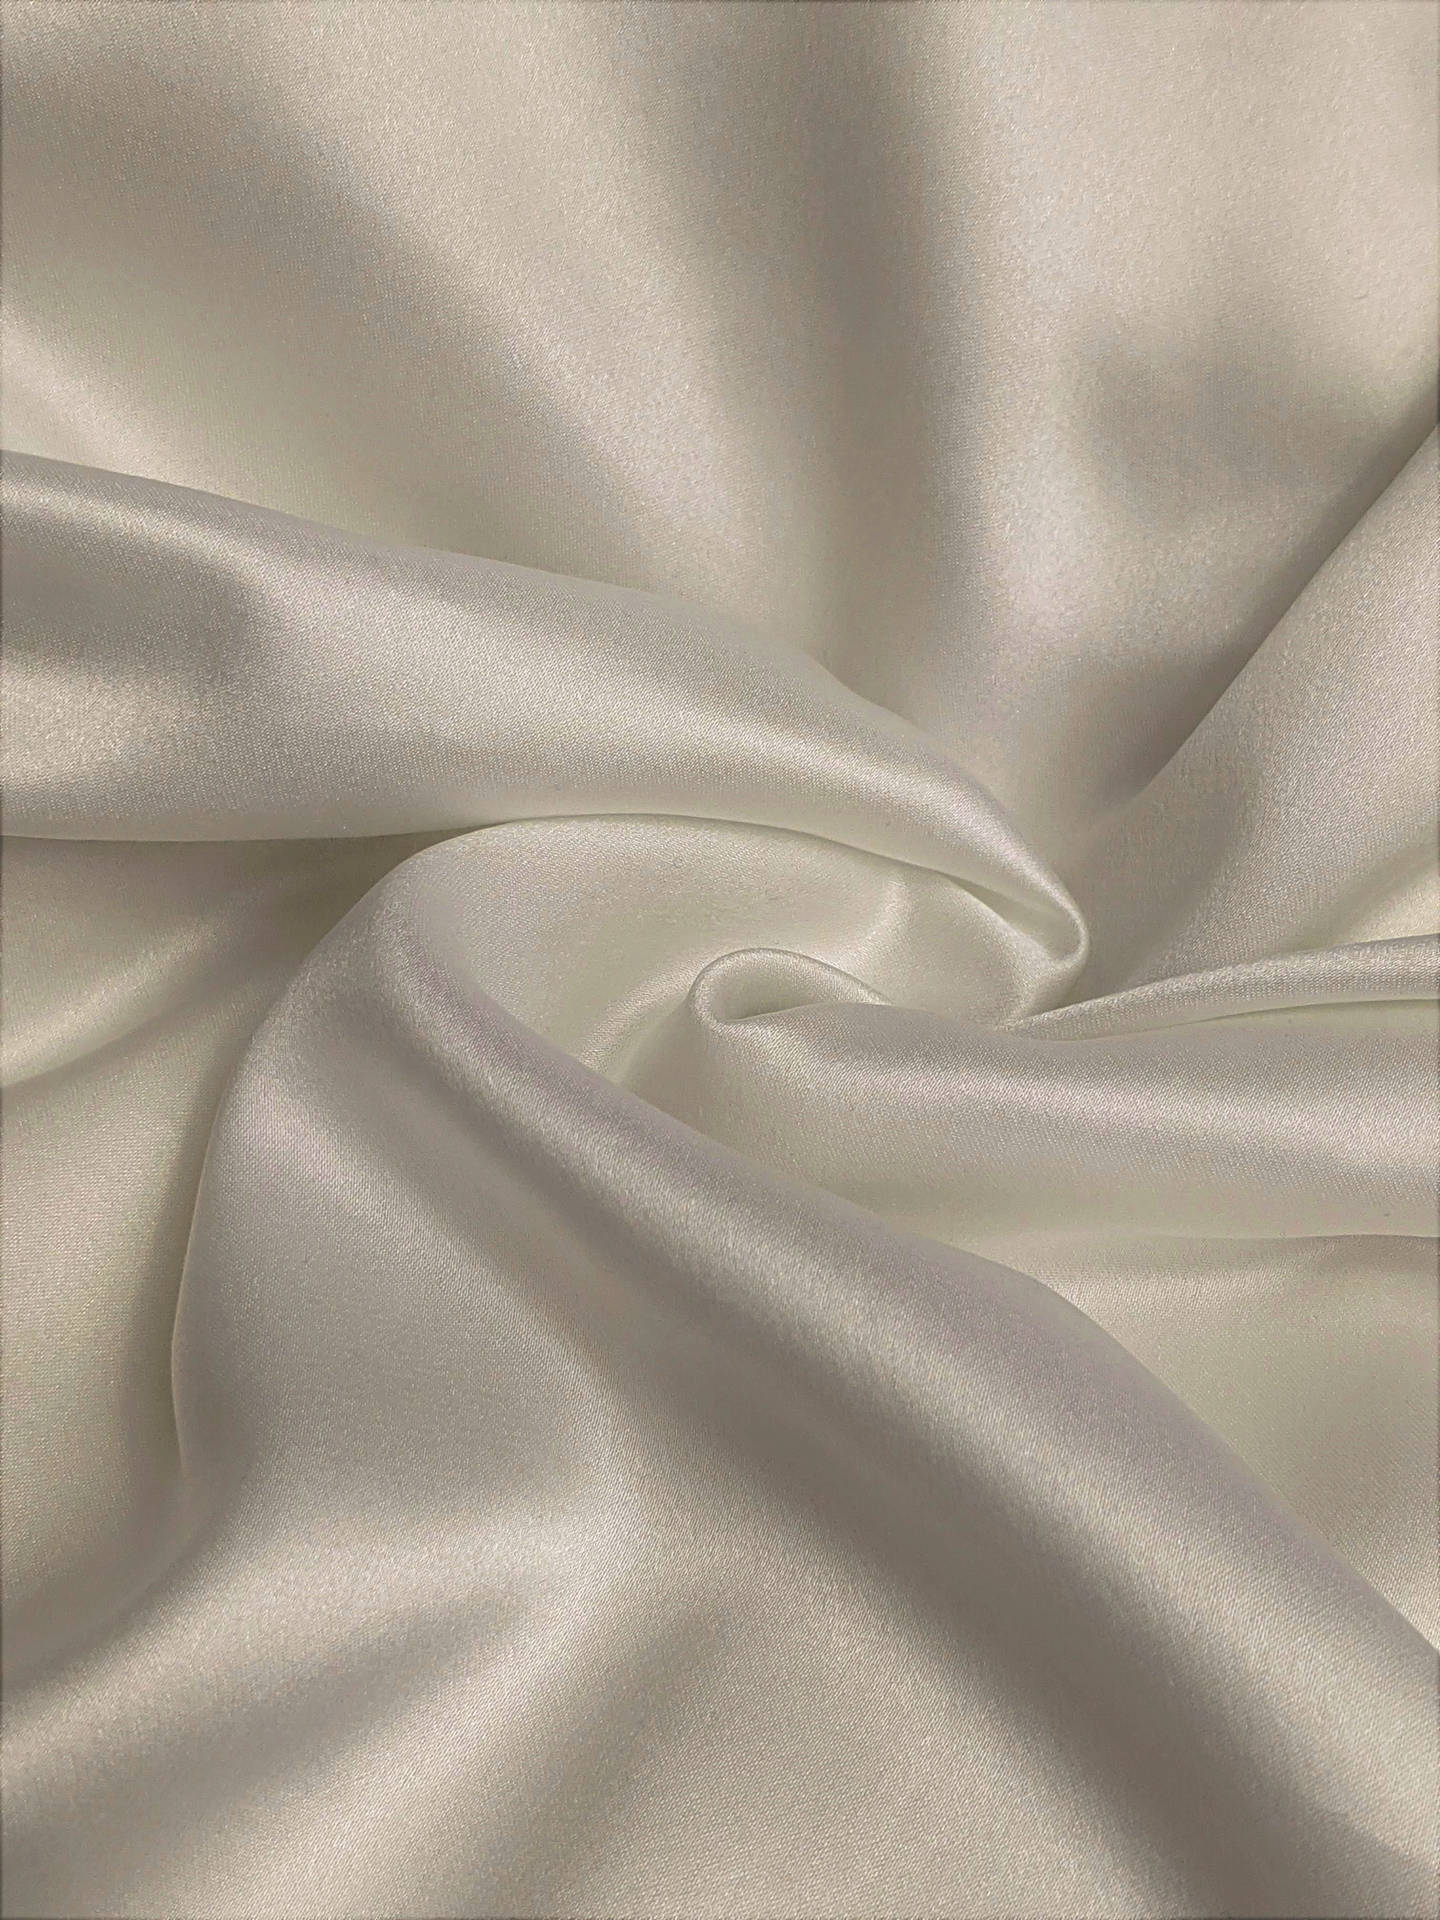 Swirled White Silk Fabric Wallpaper